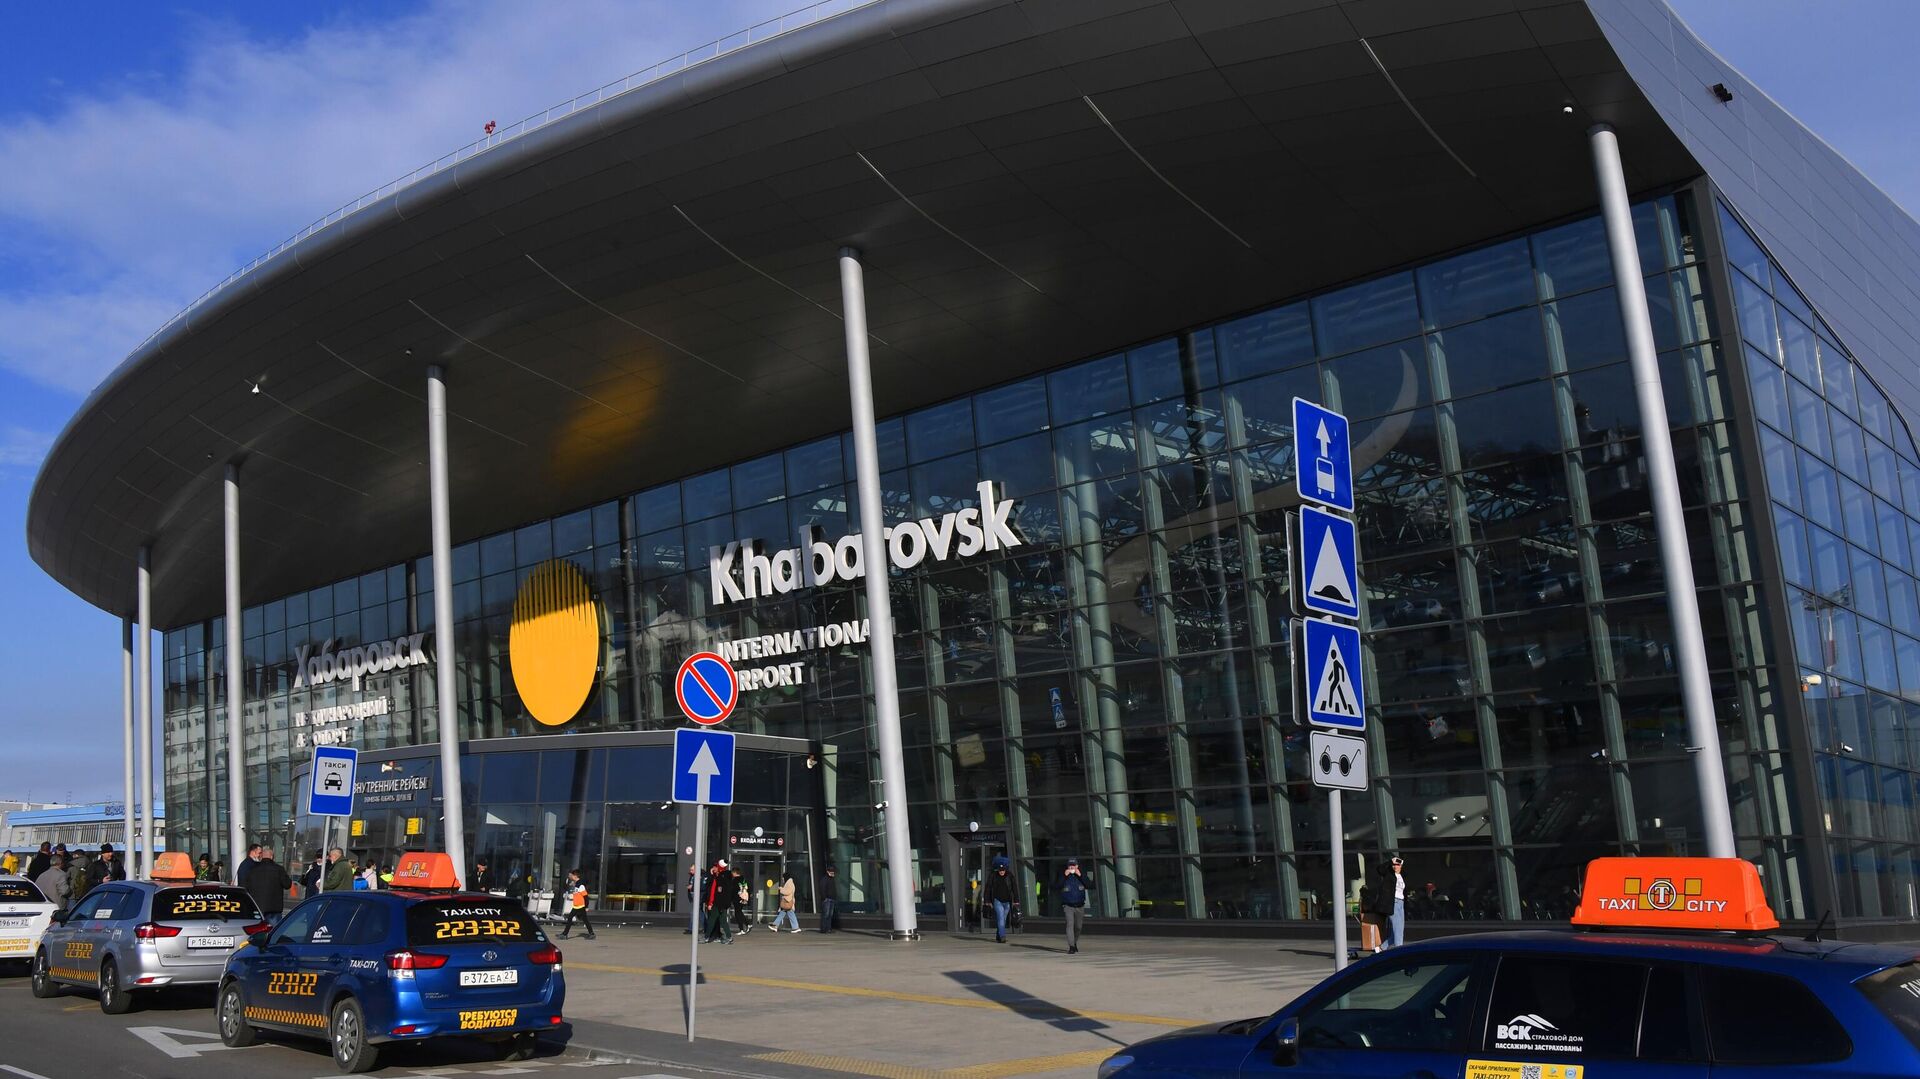 Вторая ВПП в аэропорту Хабаровска приведена в нормативное состояние - Недвижимость РИА Новости, 08.02.2022